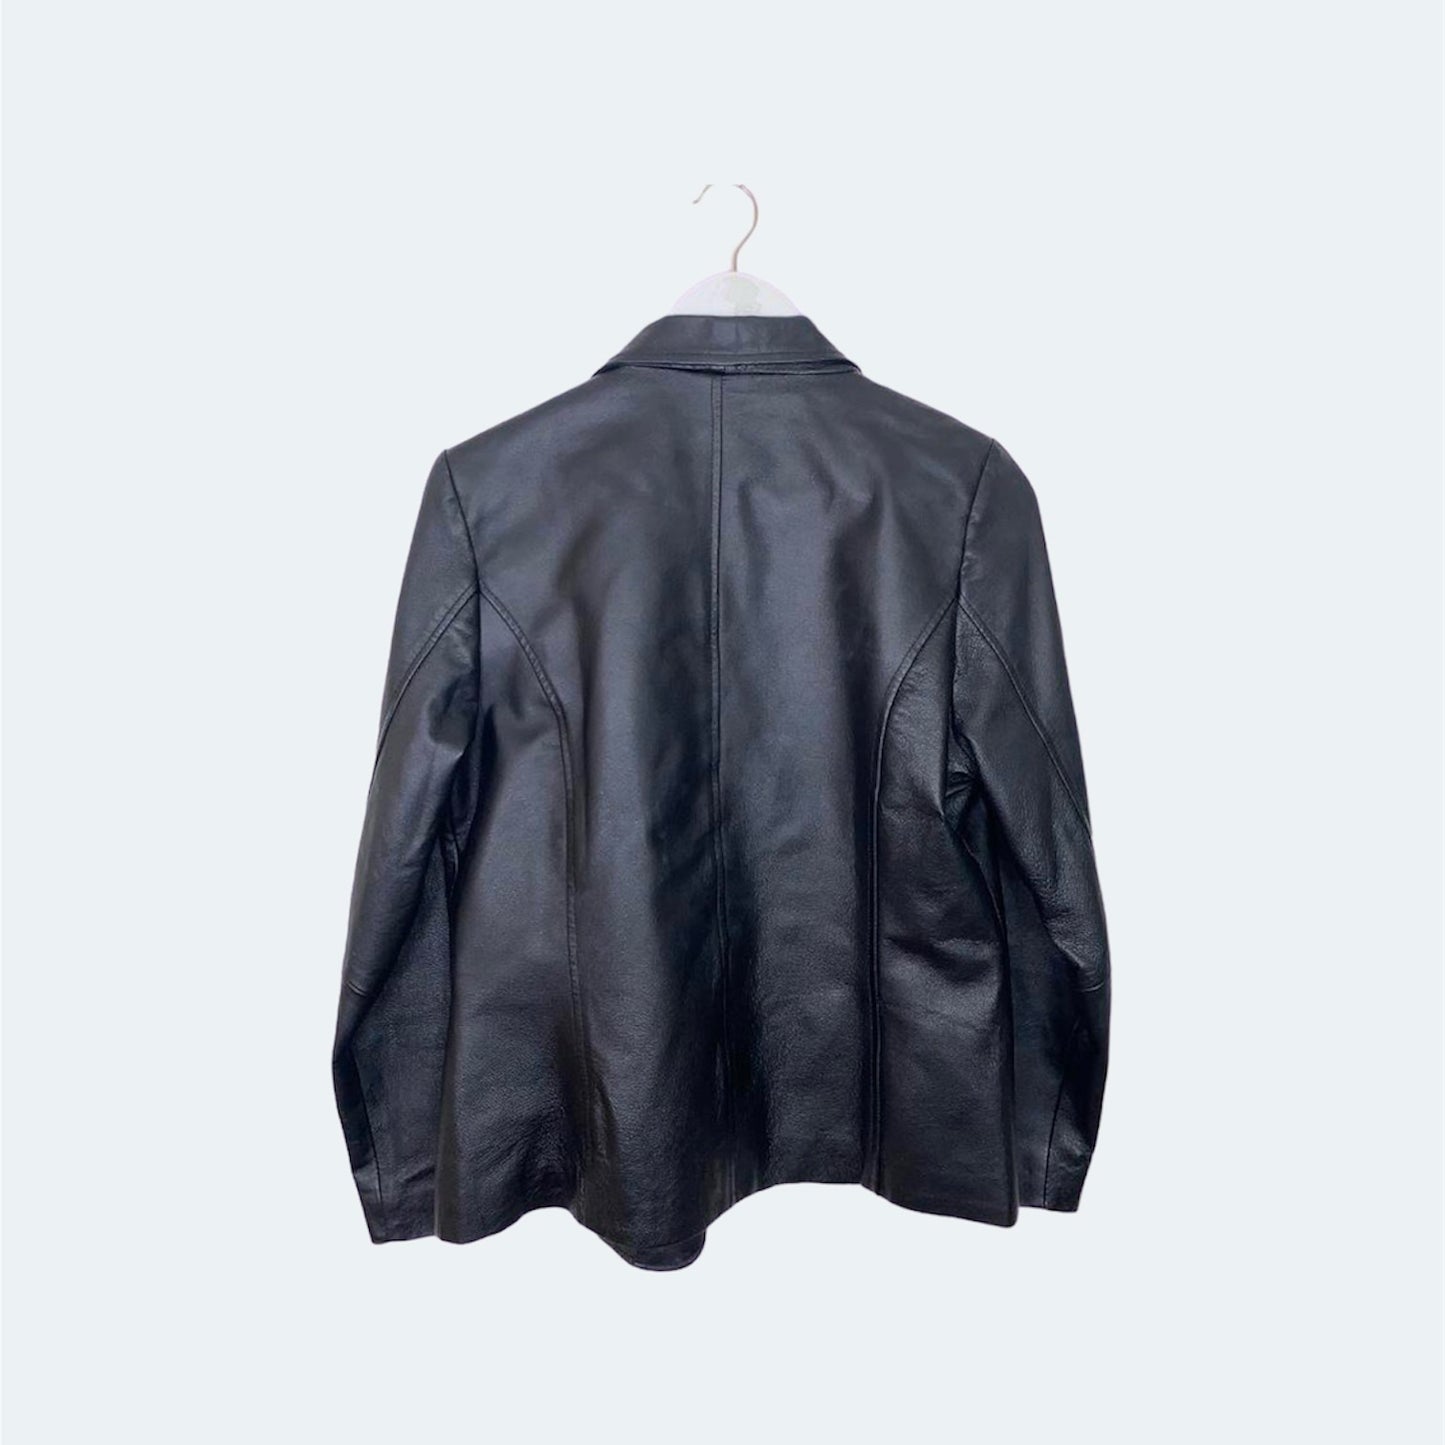 Black Leather Blazer Jacket 90s